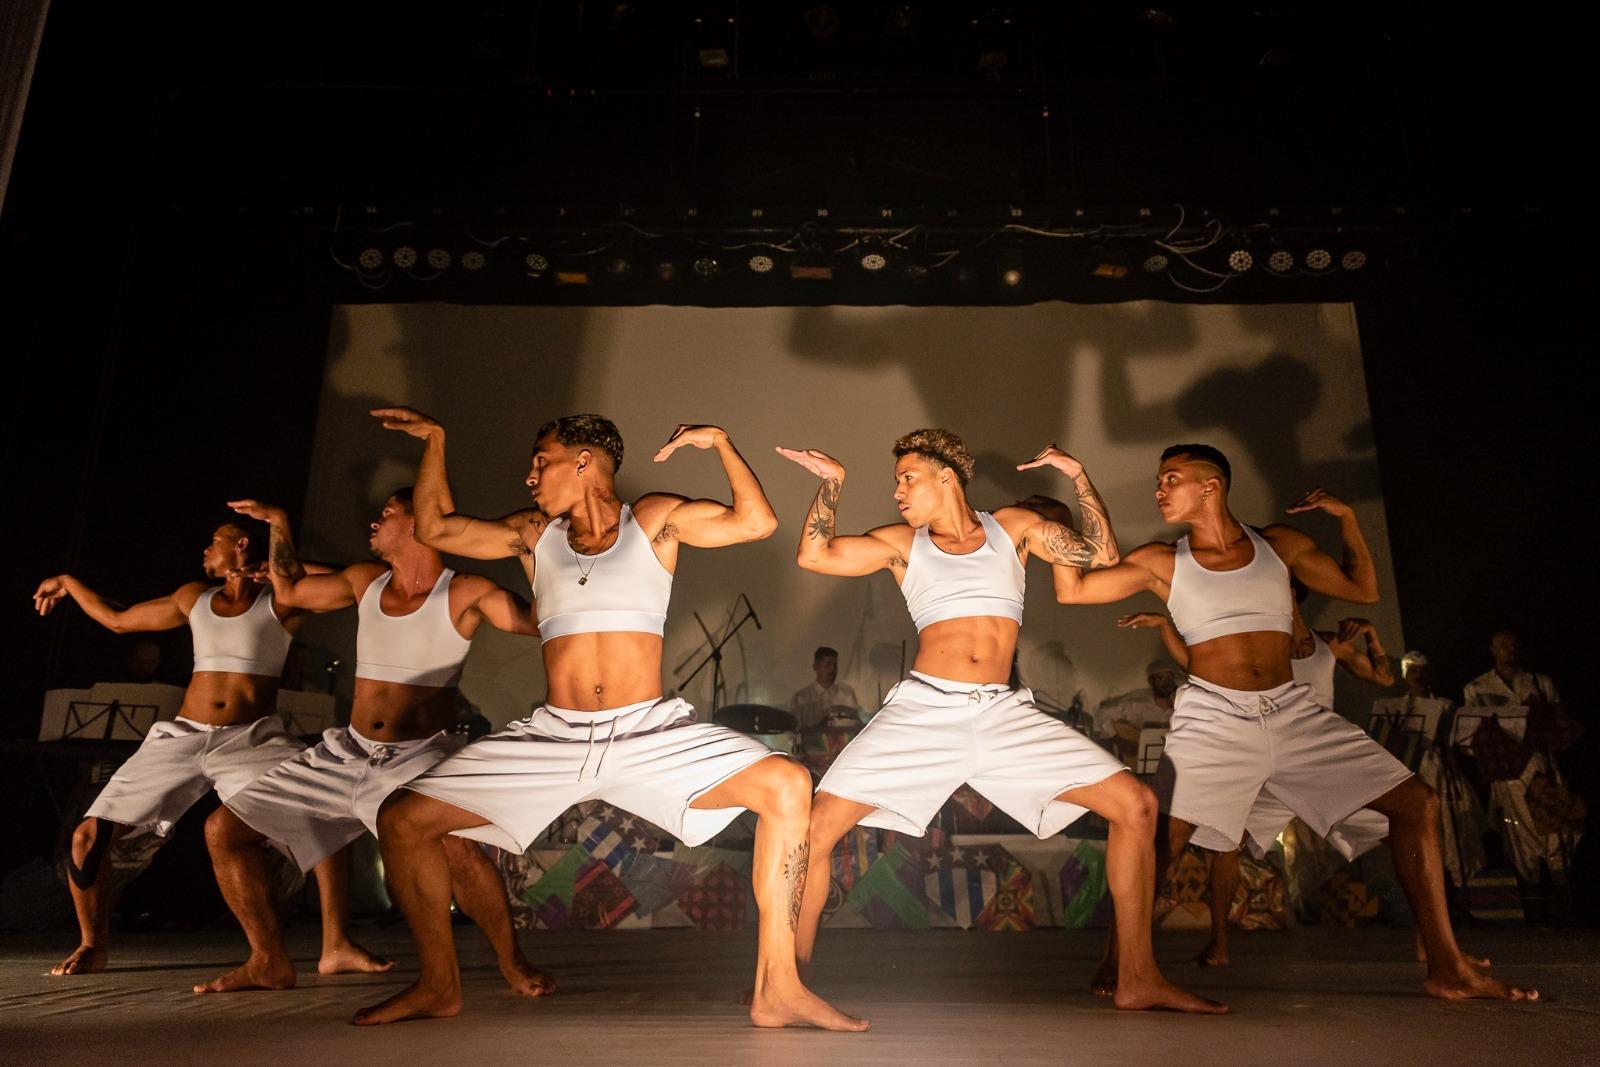 Espetáculo de Dança “Fênix” da Clarin Cia de Dança no Sesc Avenida Paulista